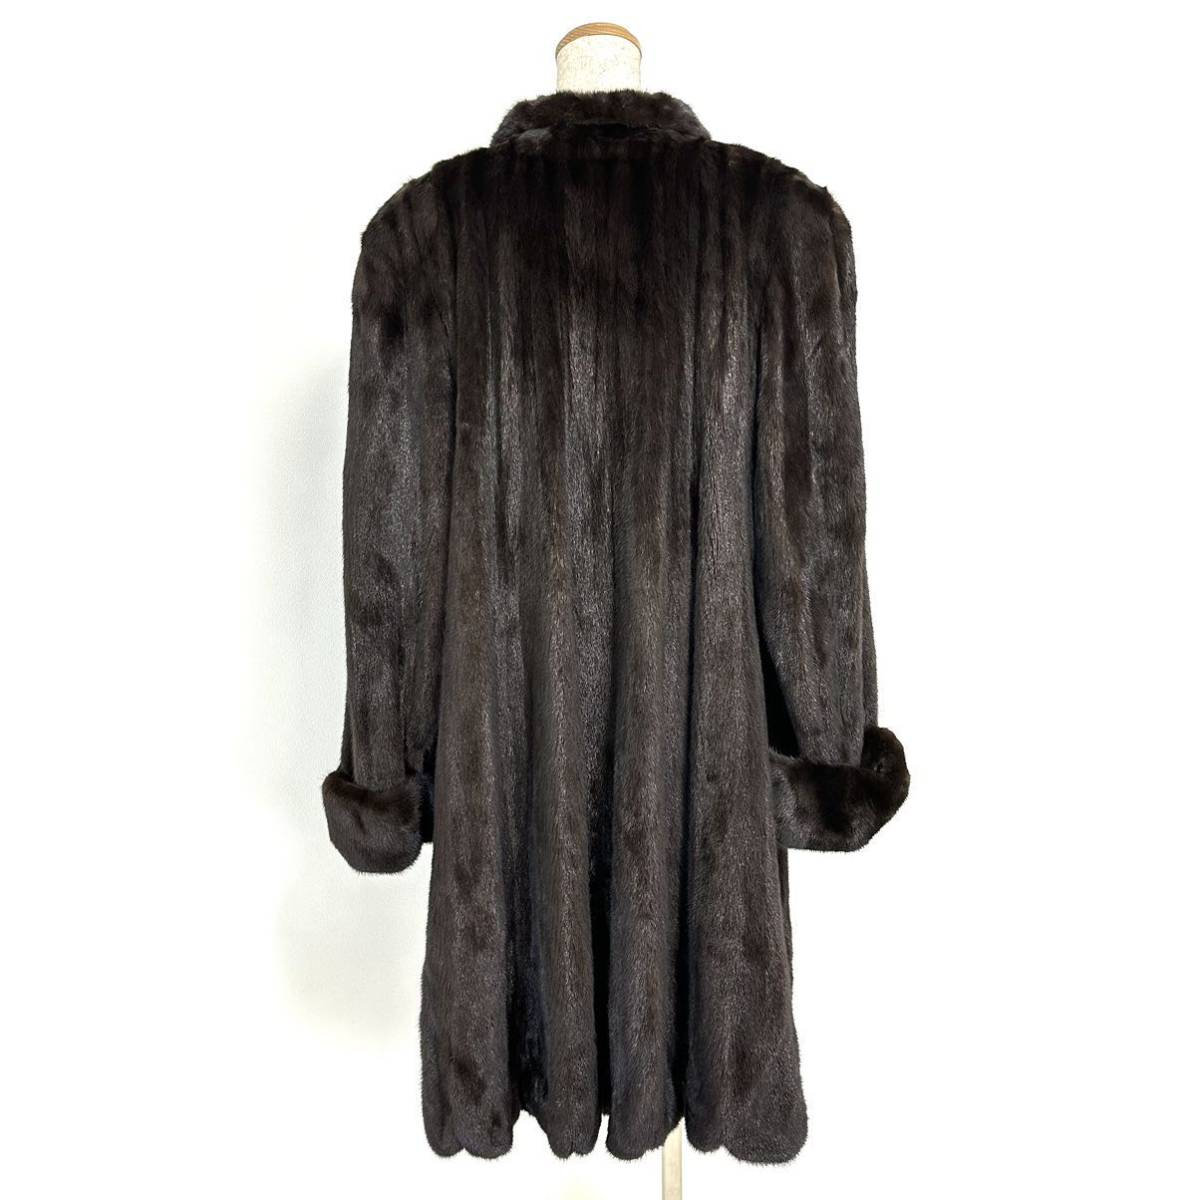 【貂商】h1845 BLACKGLAMA ブラックミンク ハーフコート デザインコート セミロング ロングコート ミンクコート 貂皮 mink身丈 約100cm_画像4